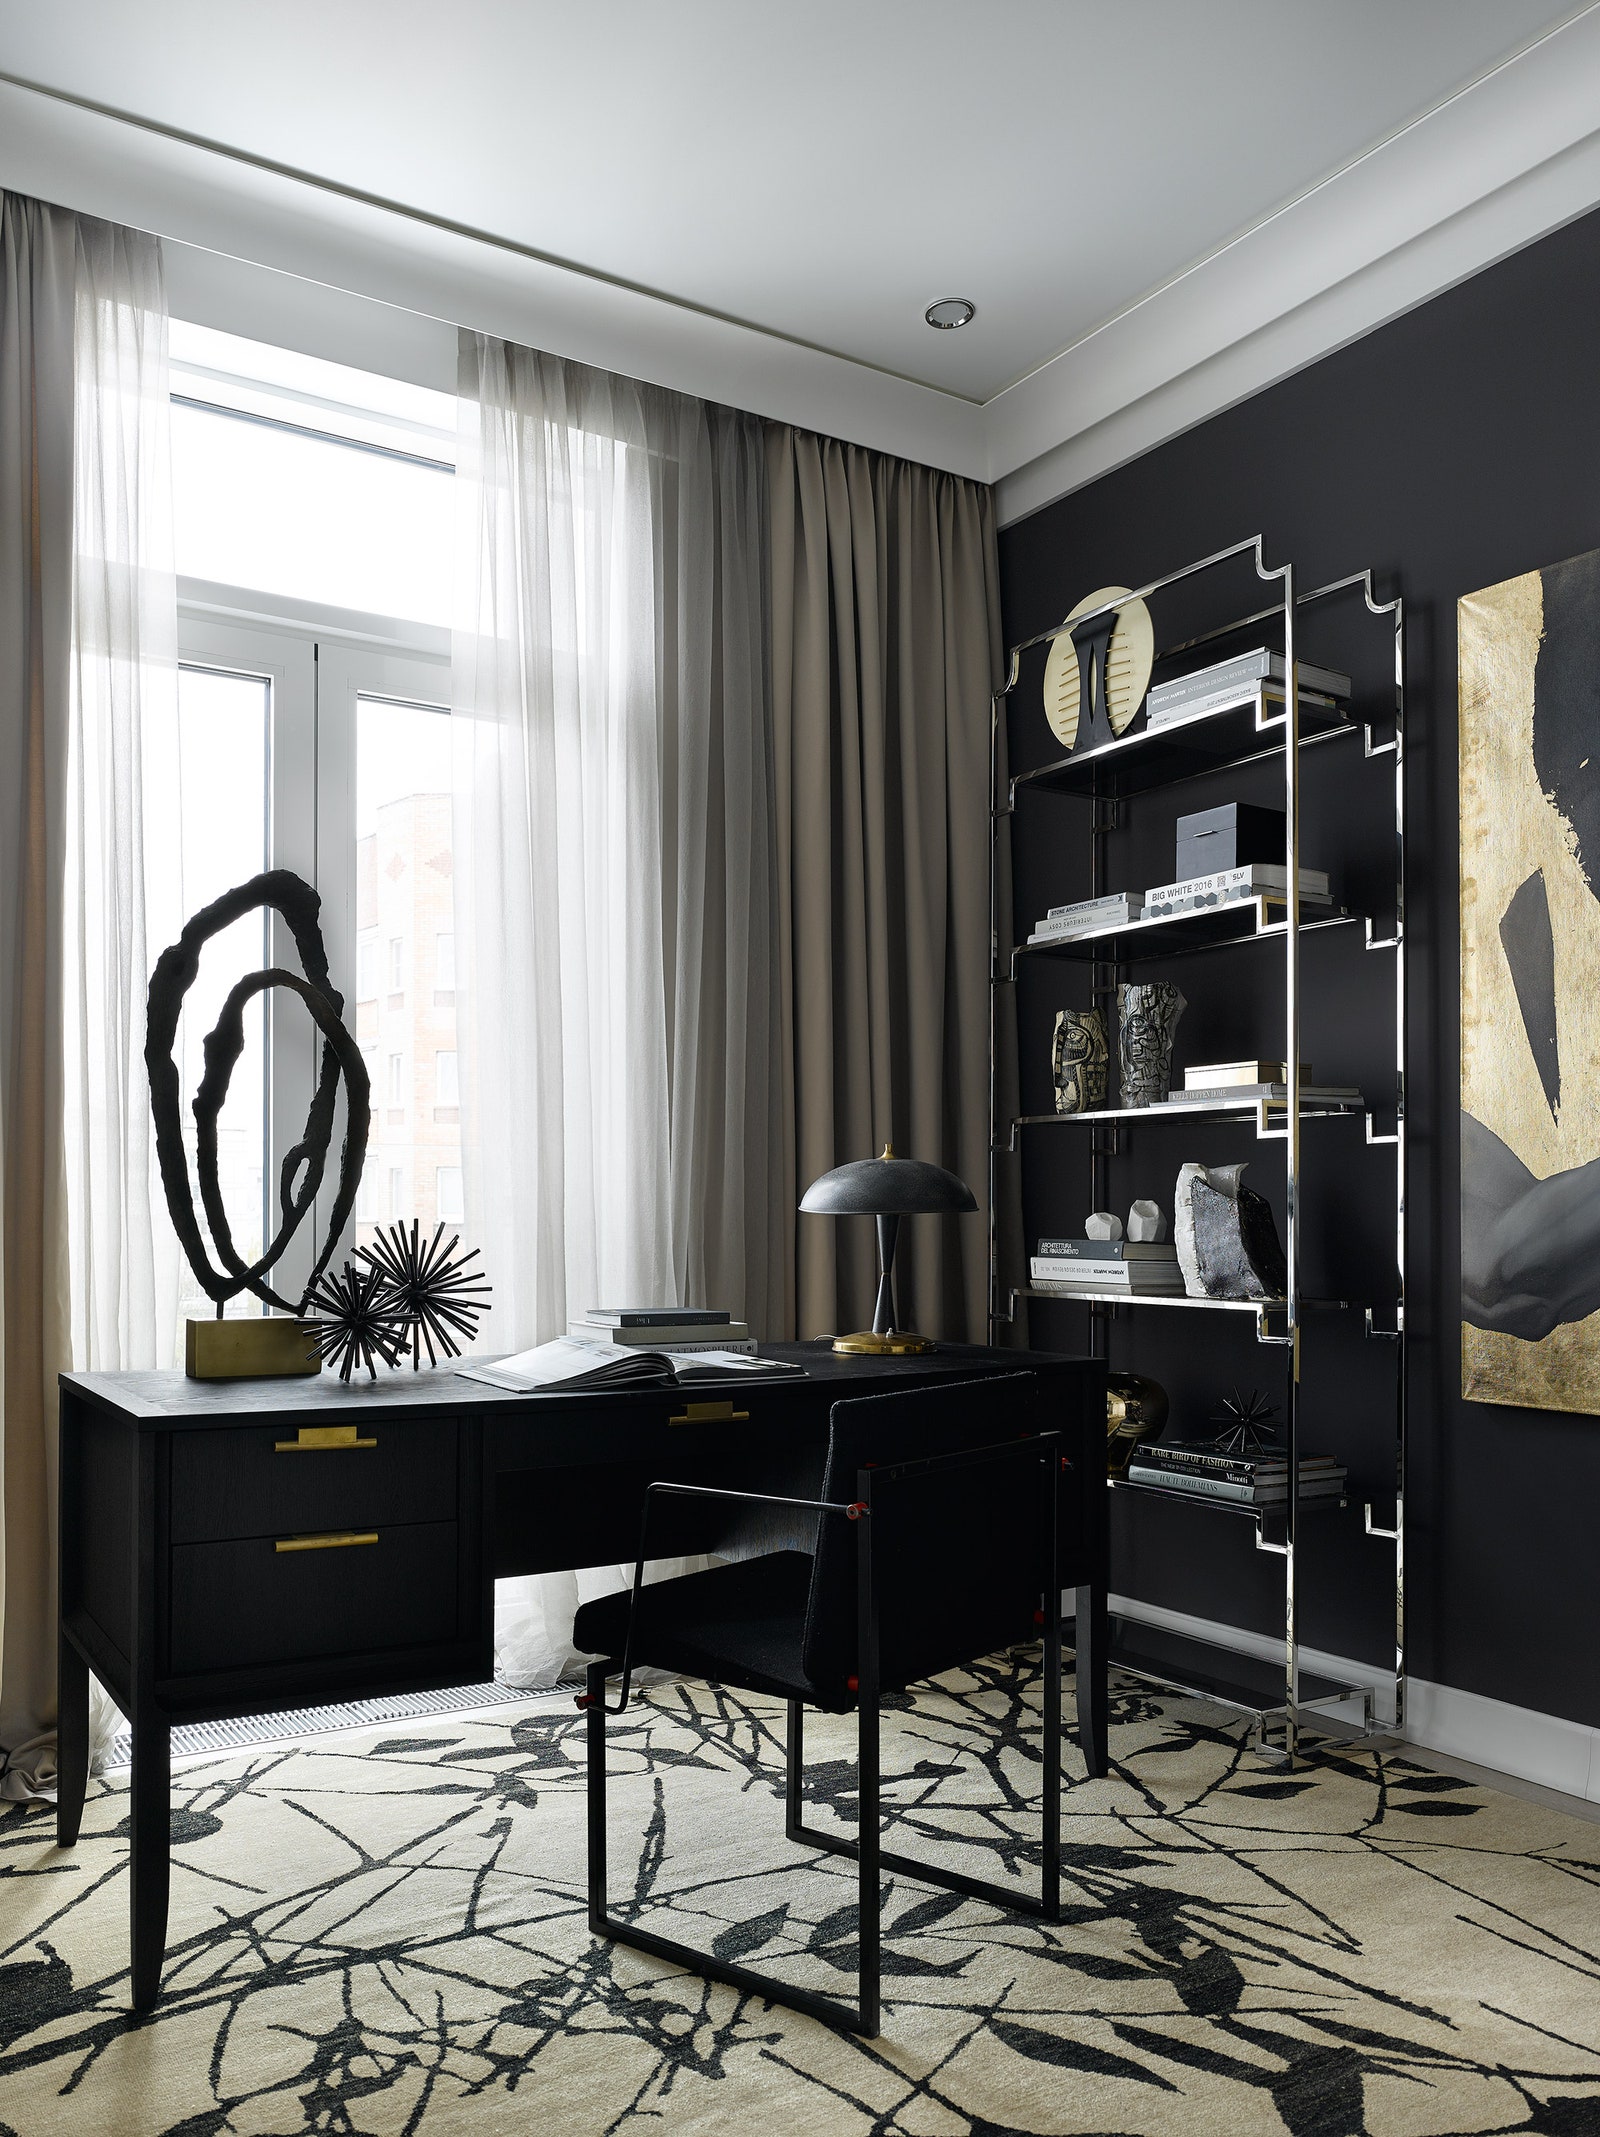 В кабинете стол Dantone Home стеллаж Ilhanes встроенная мебель изготовлена на заказ ковер MarkPatlisStudio стул...